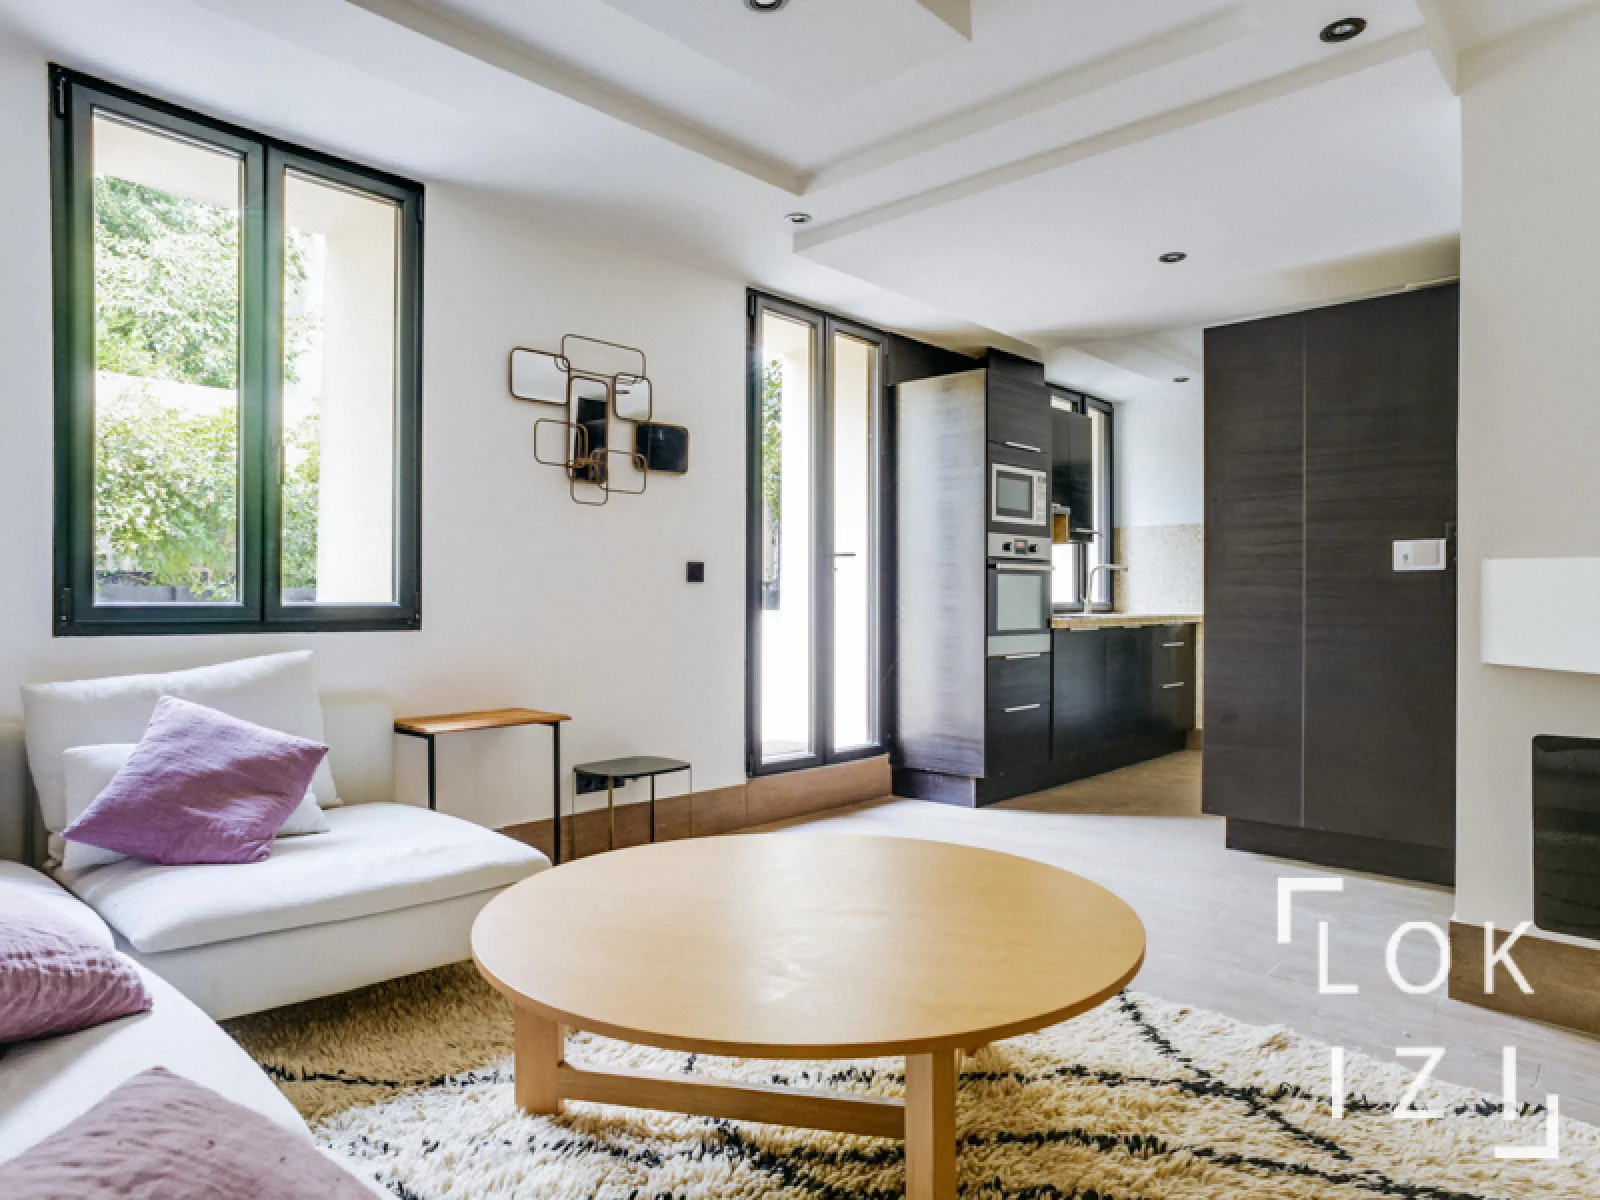 Location appartement T1 meublé 48m² (Paris - St Denis 93)